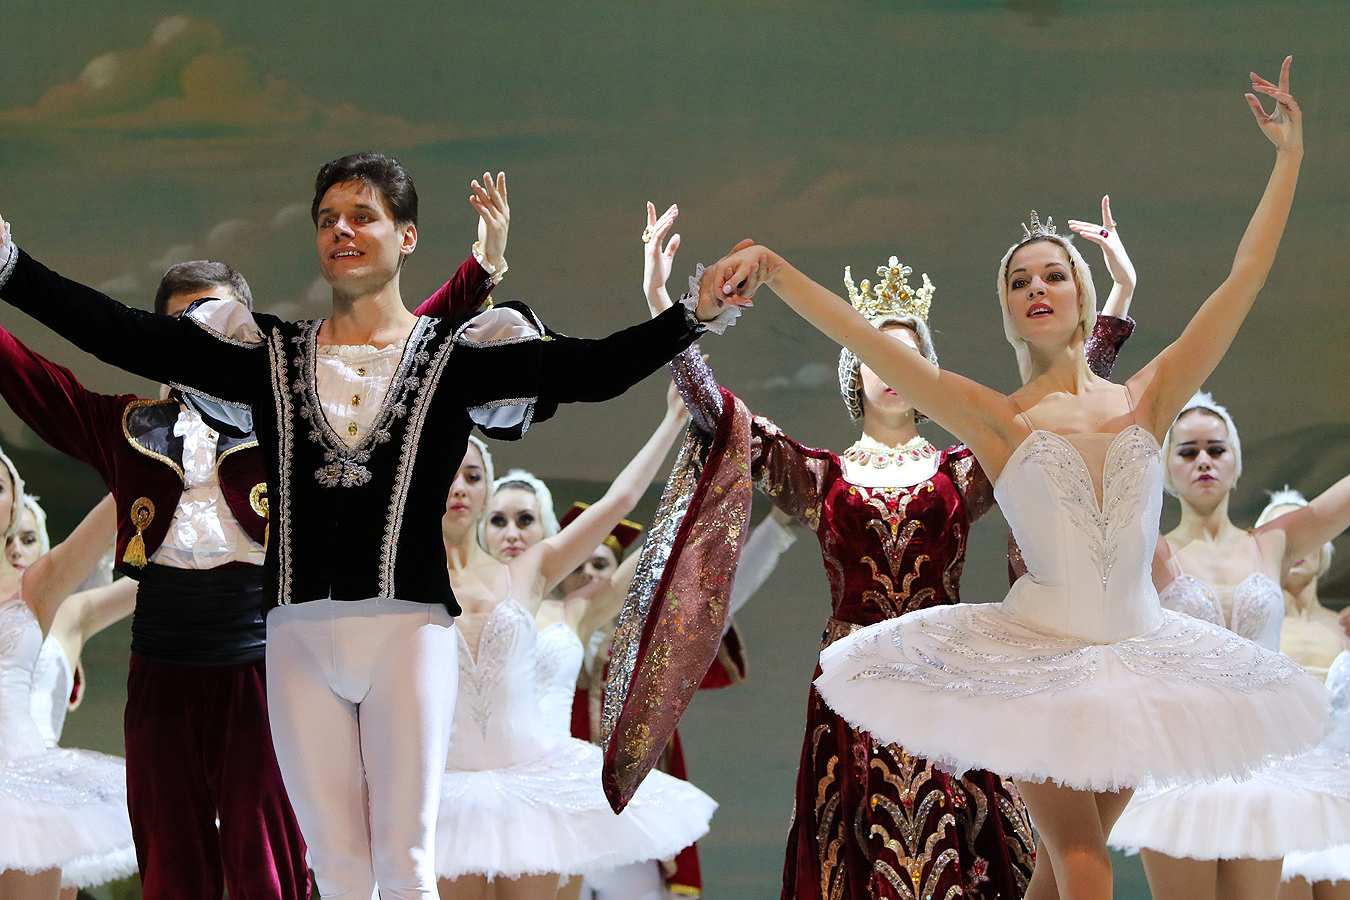 Спектакъла на класиката "Лебедово езеро" в изпълнение на Руски държавен балет на лед "Санкт Петeрбург" в зала 1 на НДК